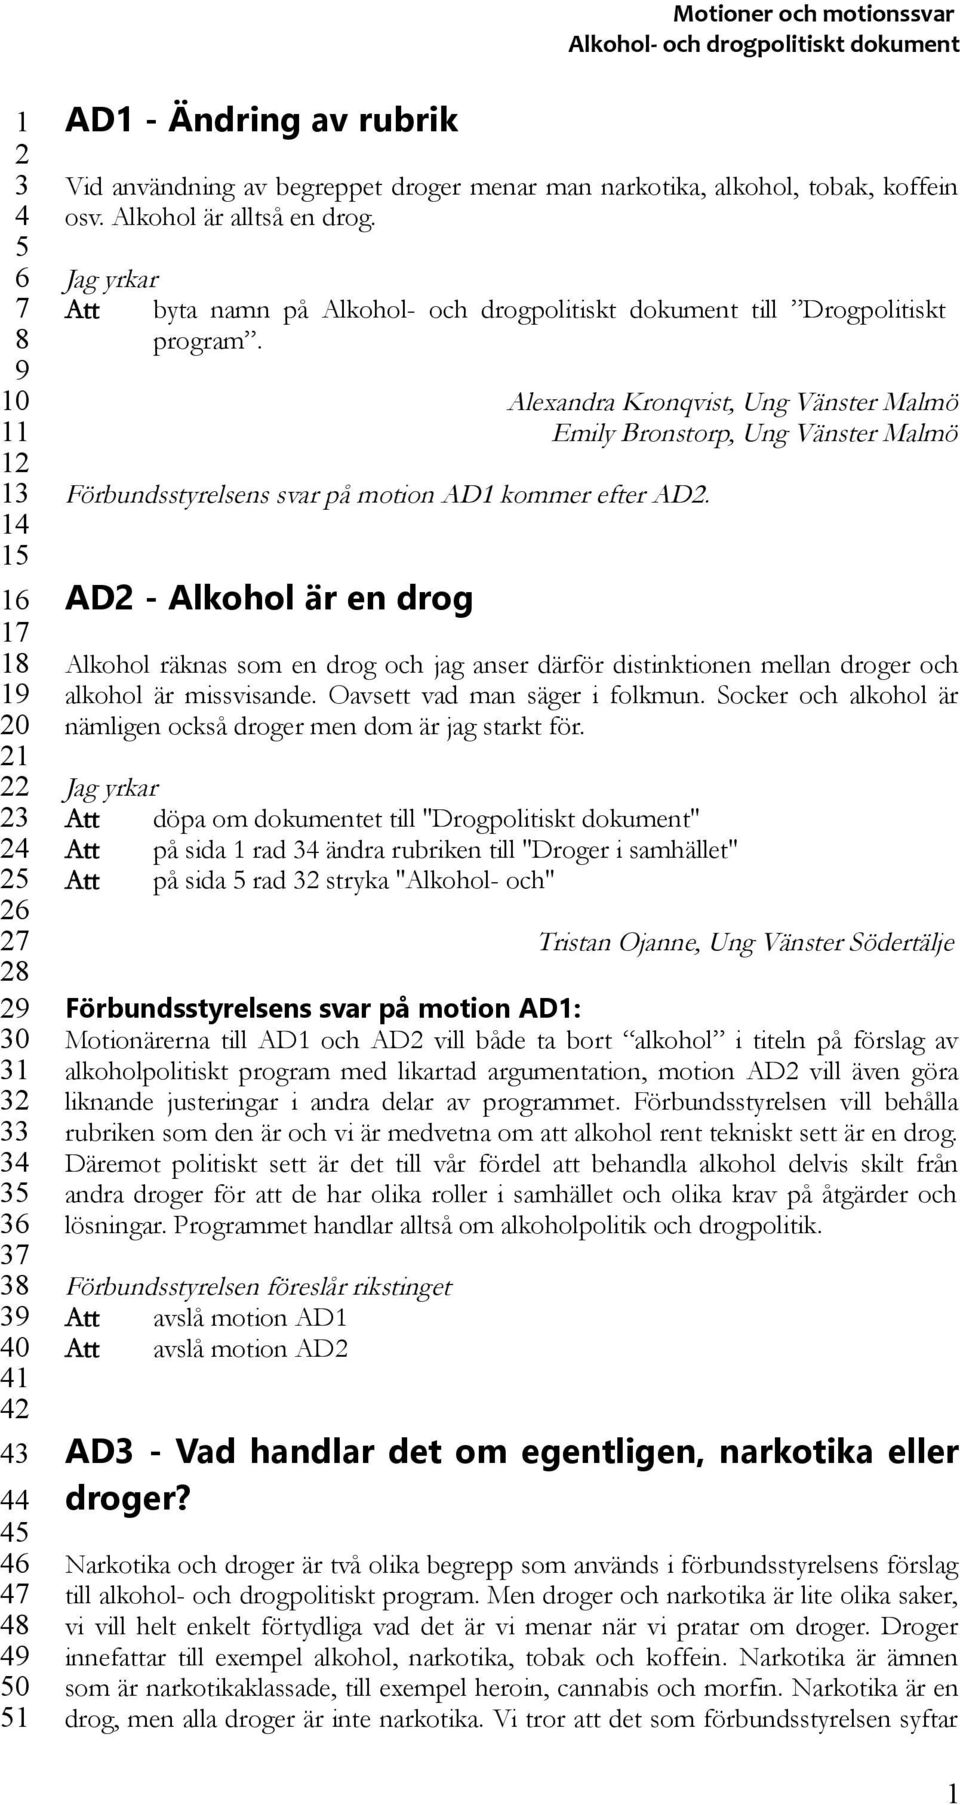 AD - Alkohol är en drog Alexandra Kronqvist, Ung Vänster Malmö Emily Bronstorp, Ung Vänster Malmö Alkohol räknas som en drog och jag anser därför distinktionen mellan droger och alkohol är